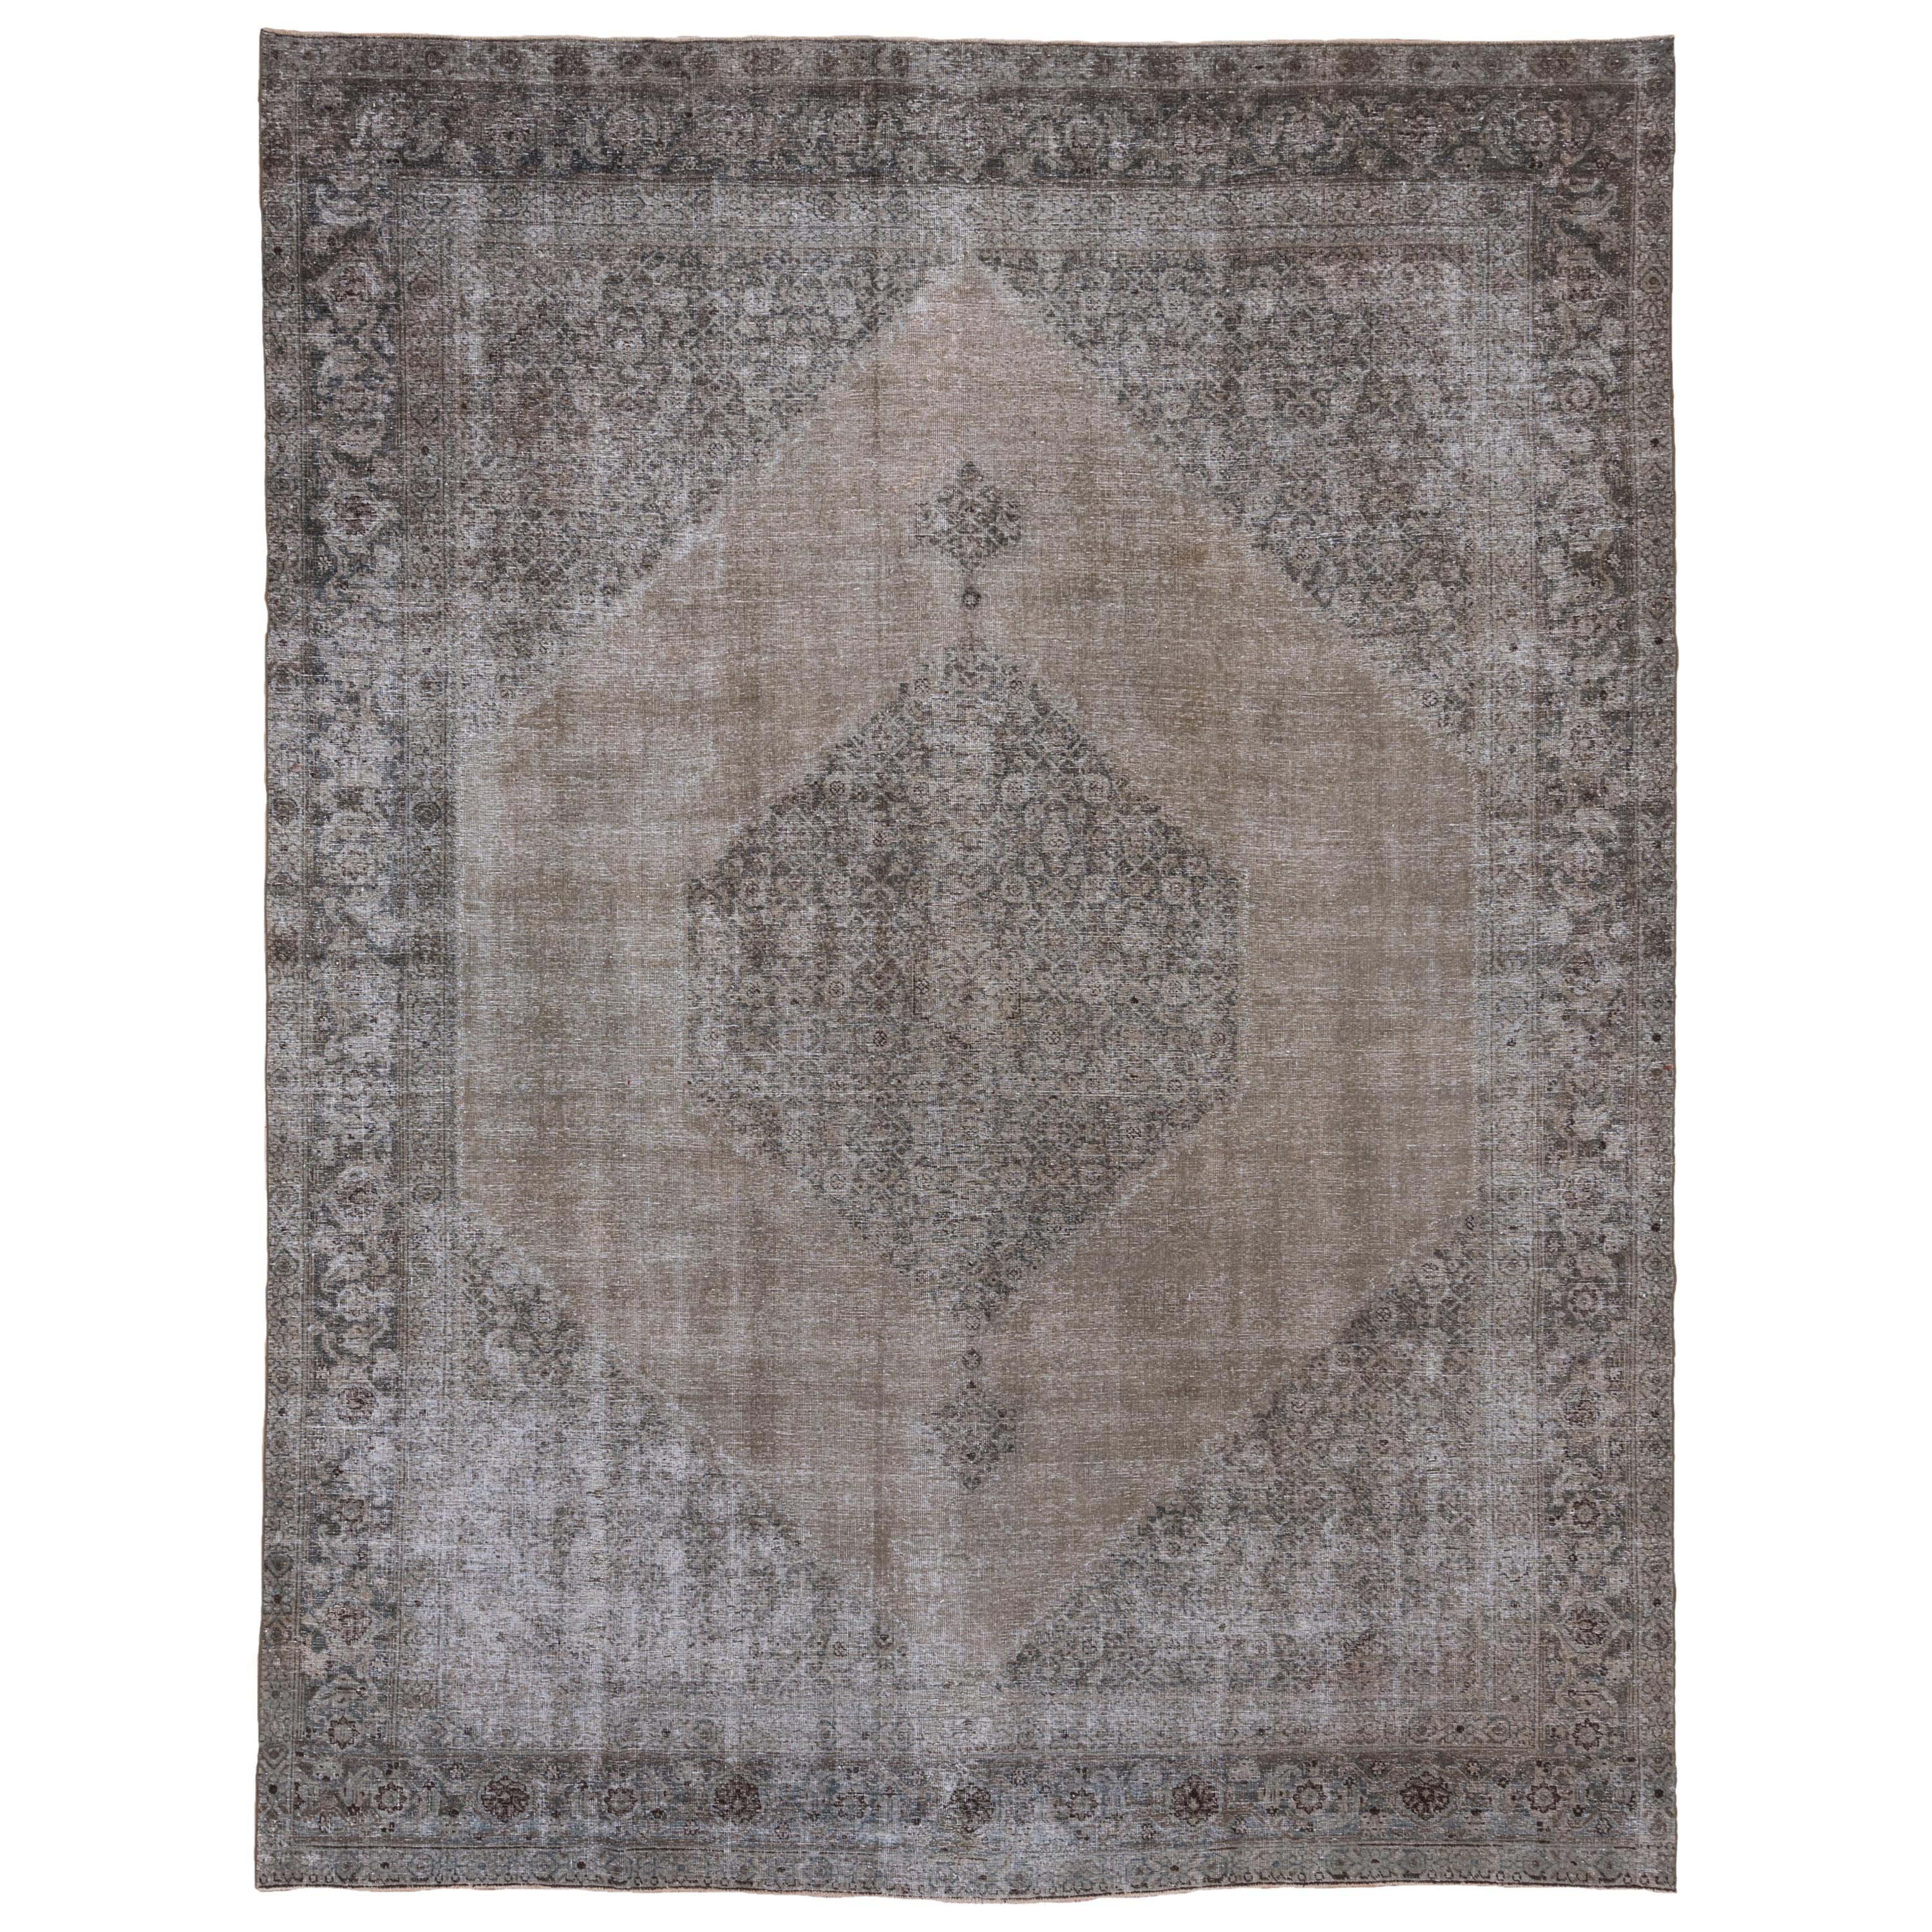 Antique Distressed Tabriz Carpet